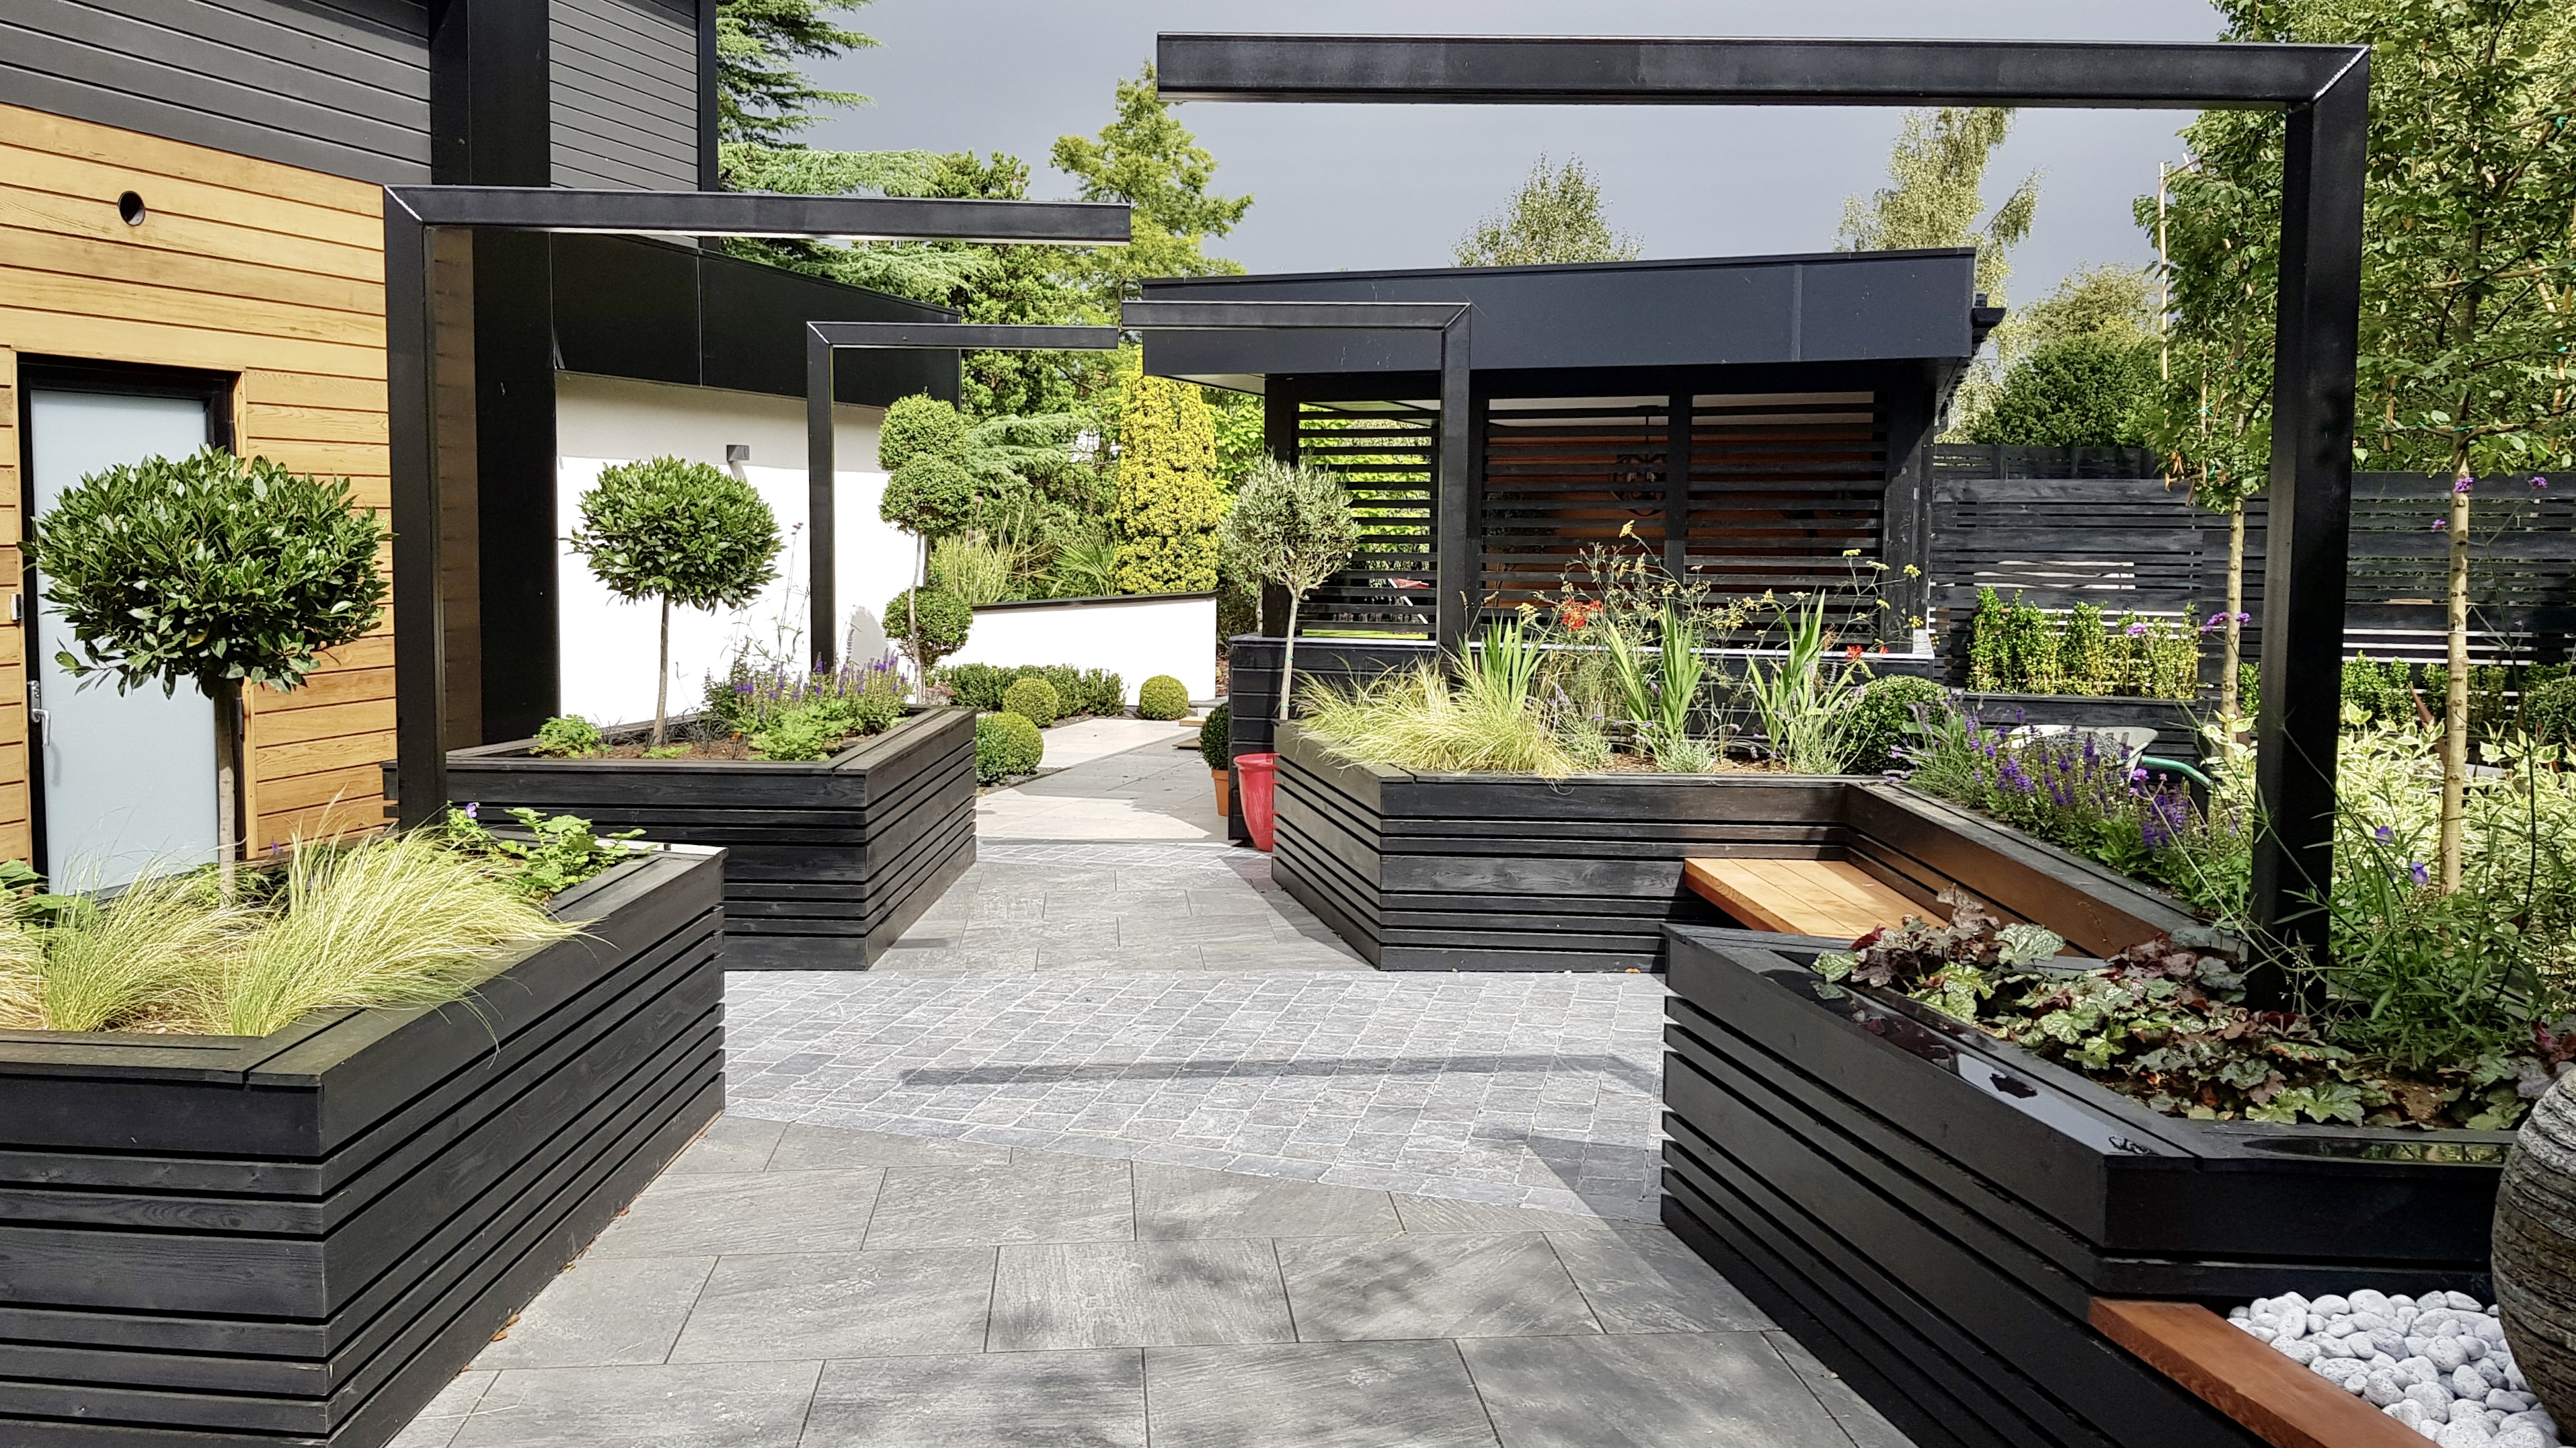 A contemporary courtyard garden with wheelchair accessibility